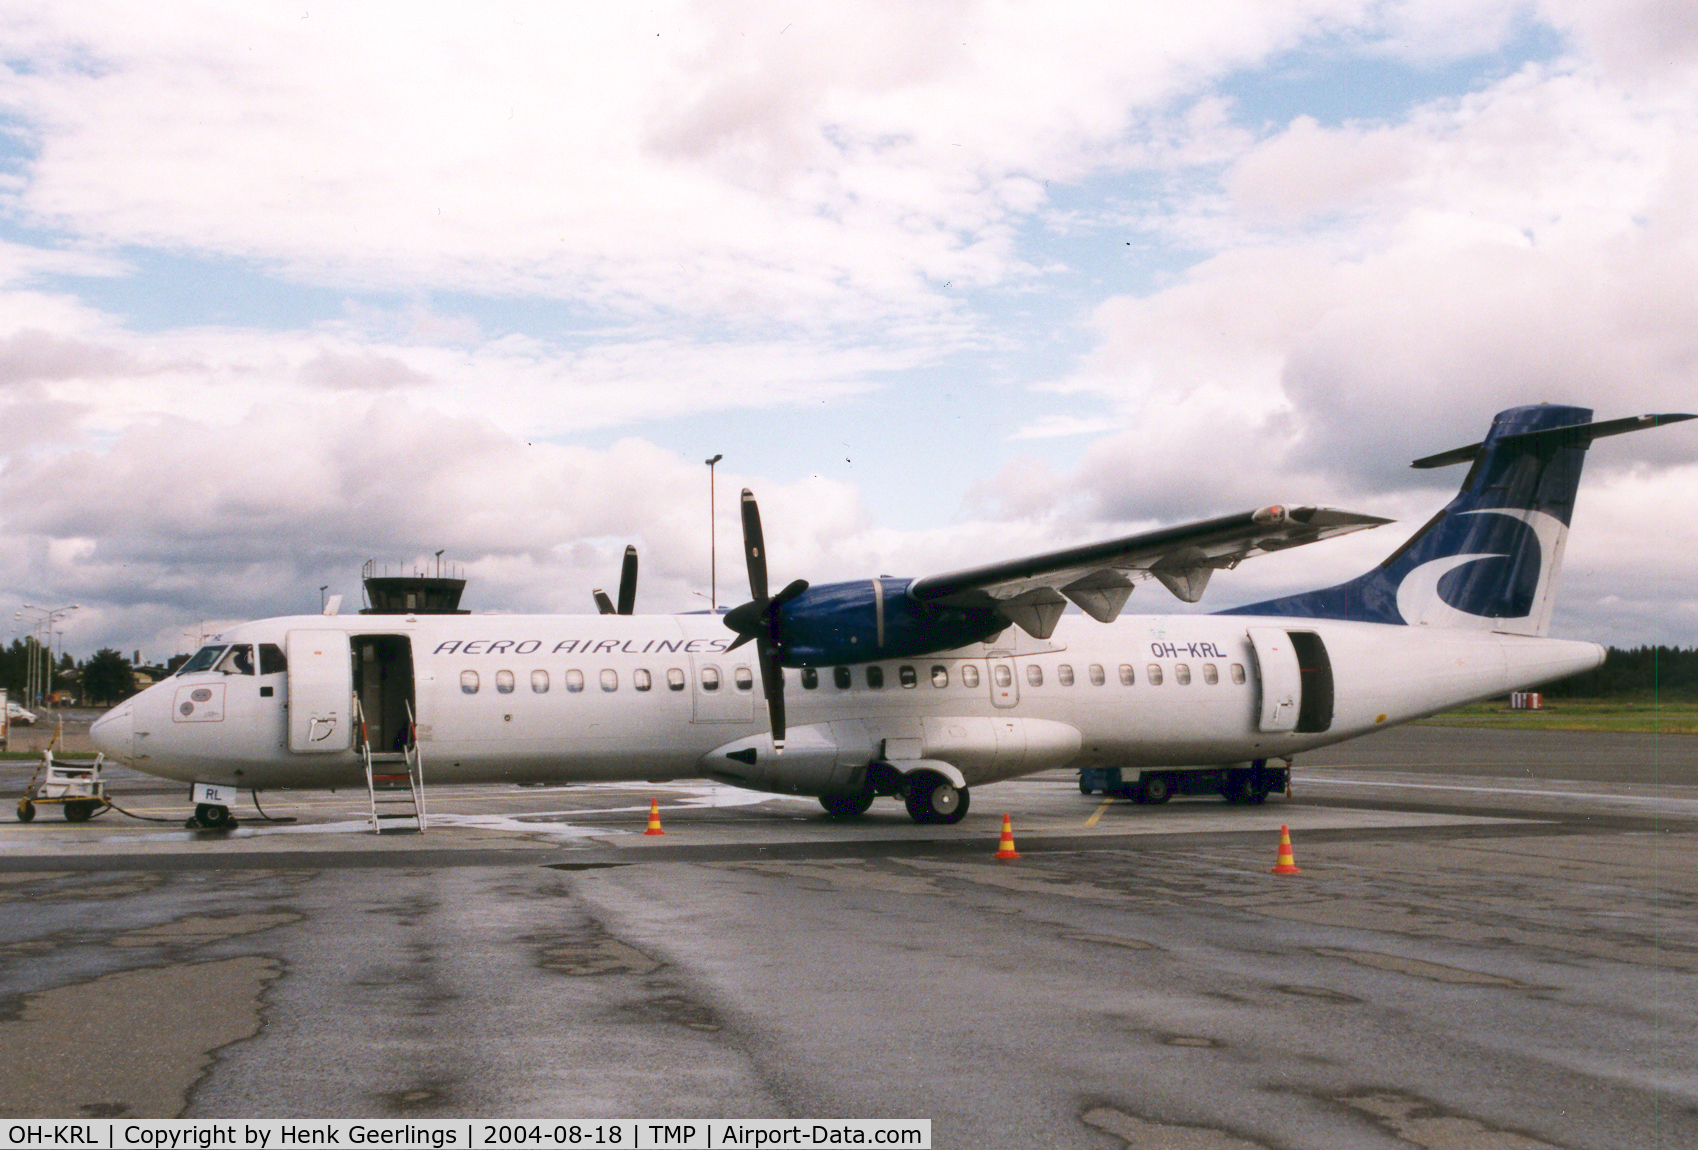 OH-KRL, 1992 ATR 72-201 C/N 332, Aero Airlines at Tampere Airport